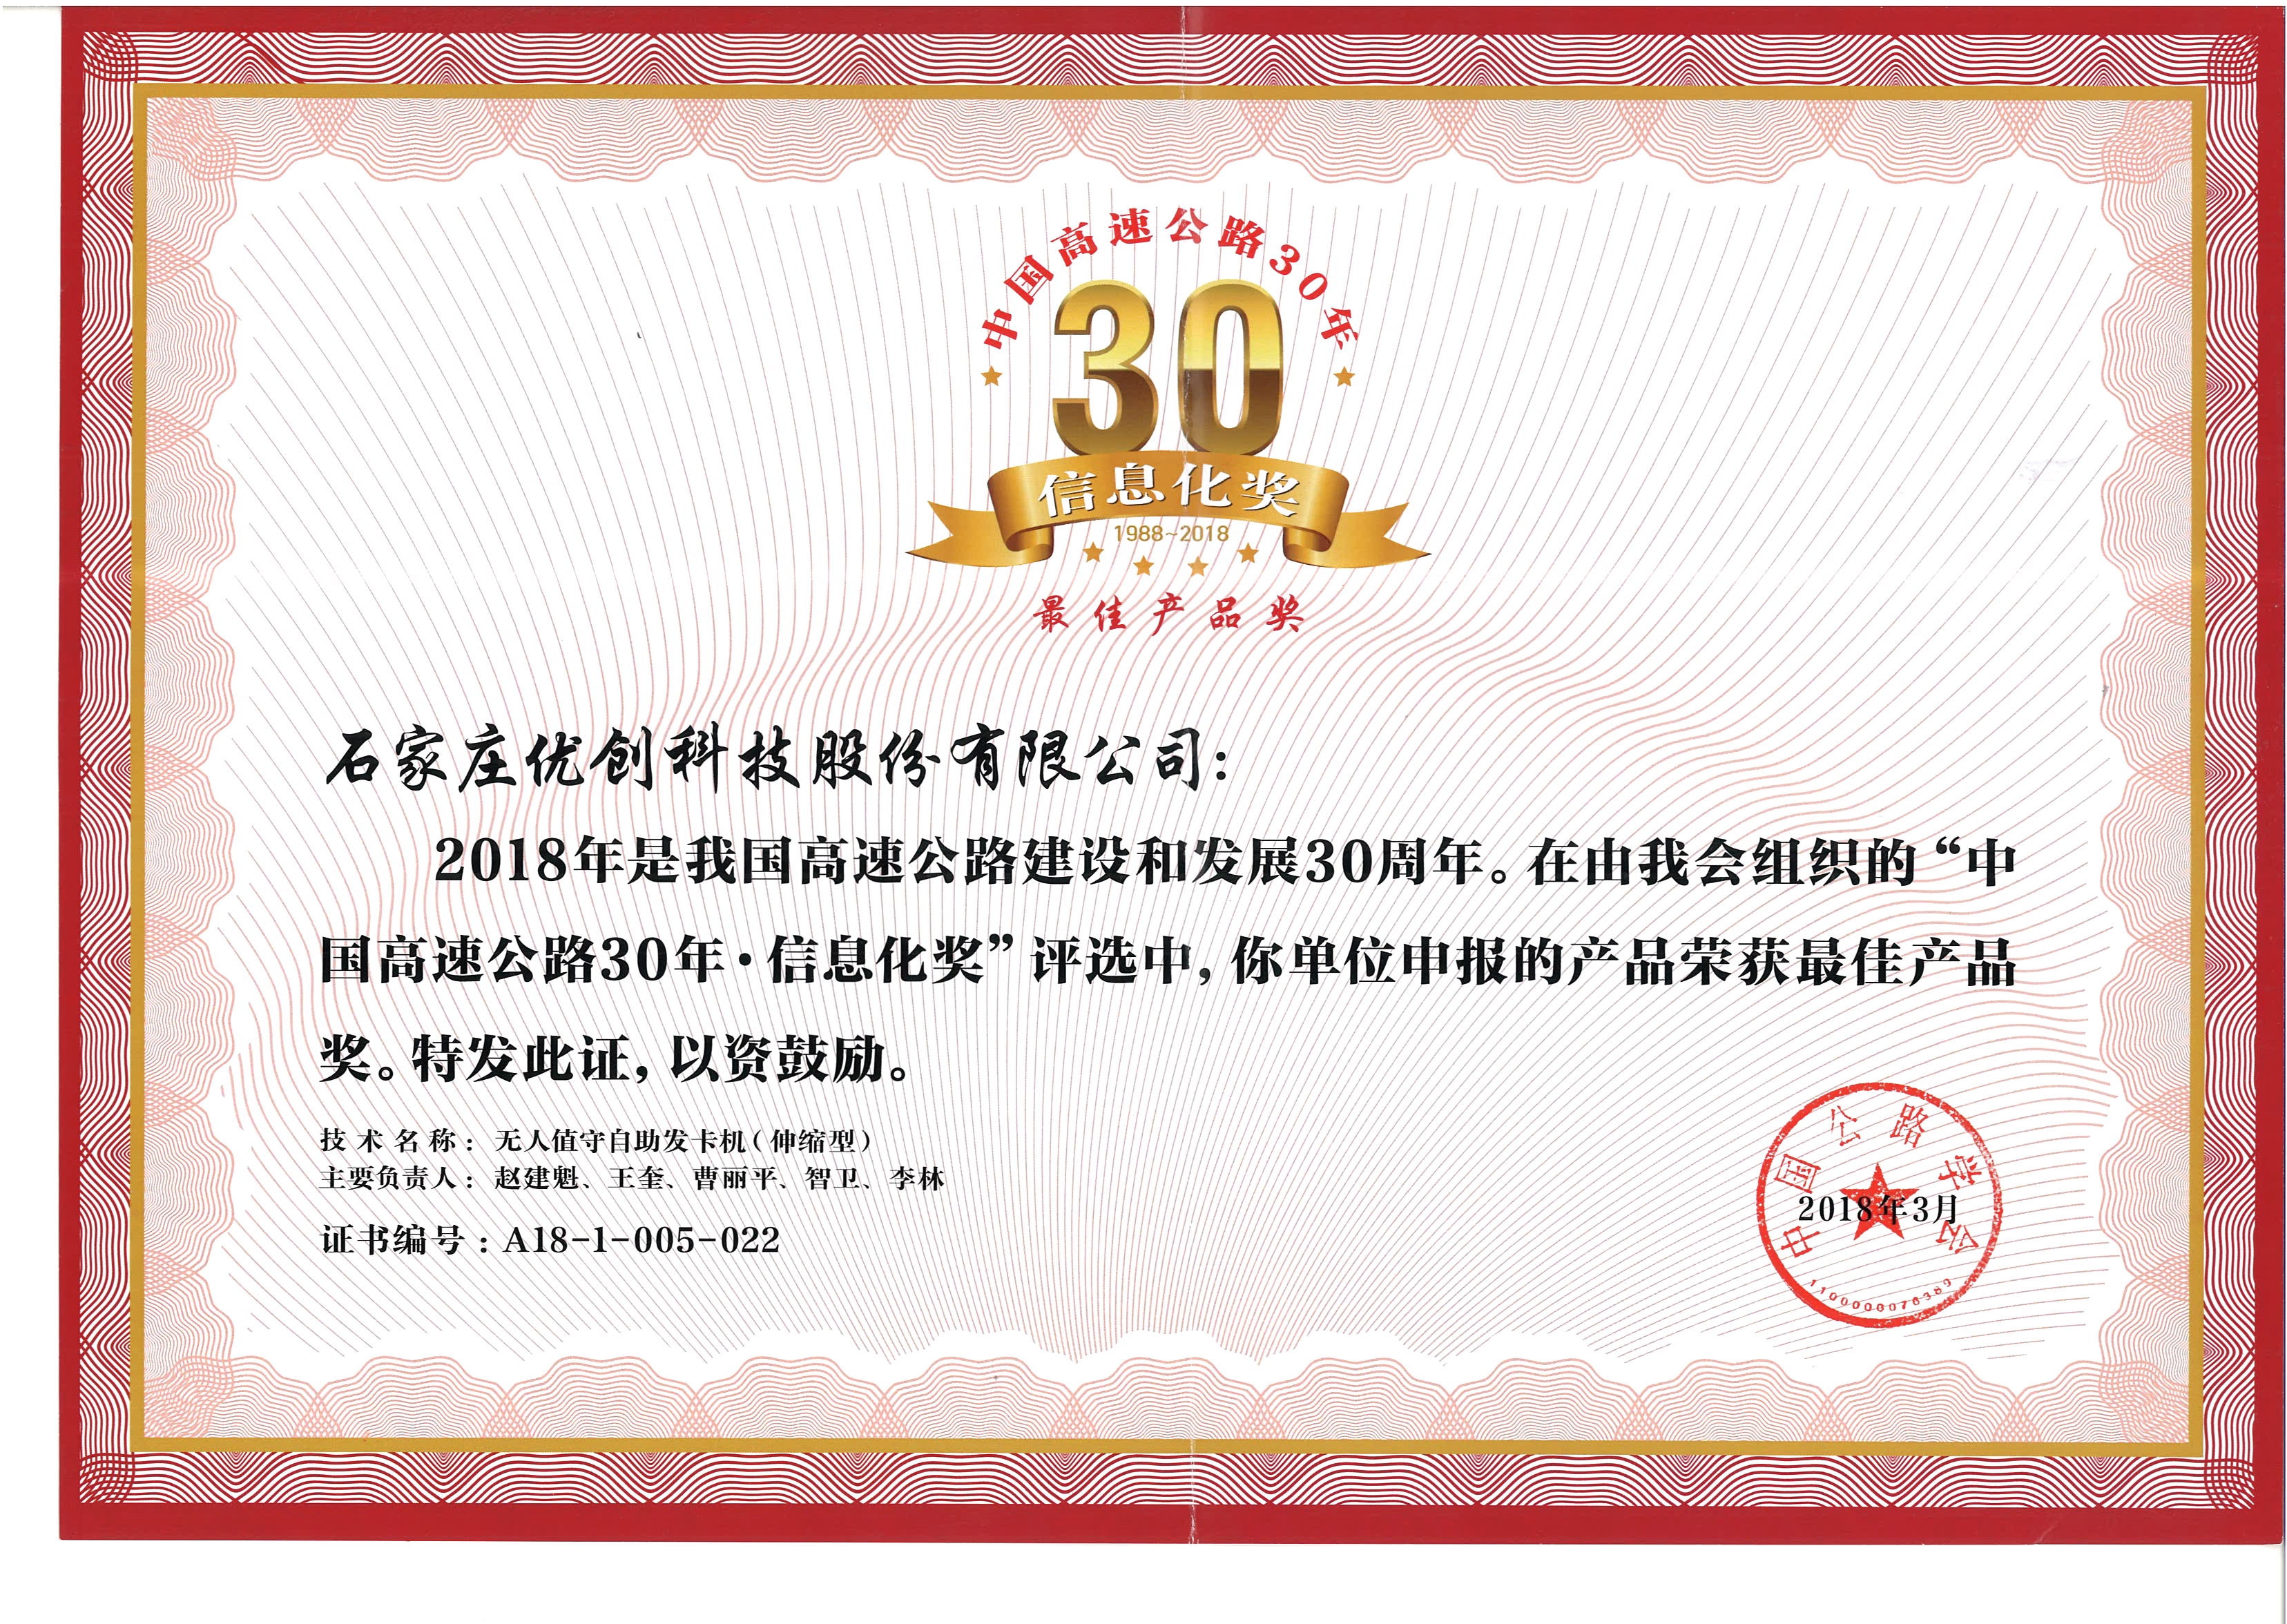 中国高速公路30年-信息化奖